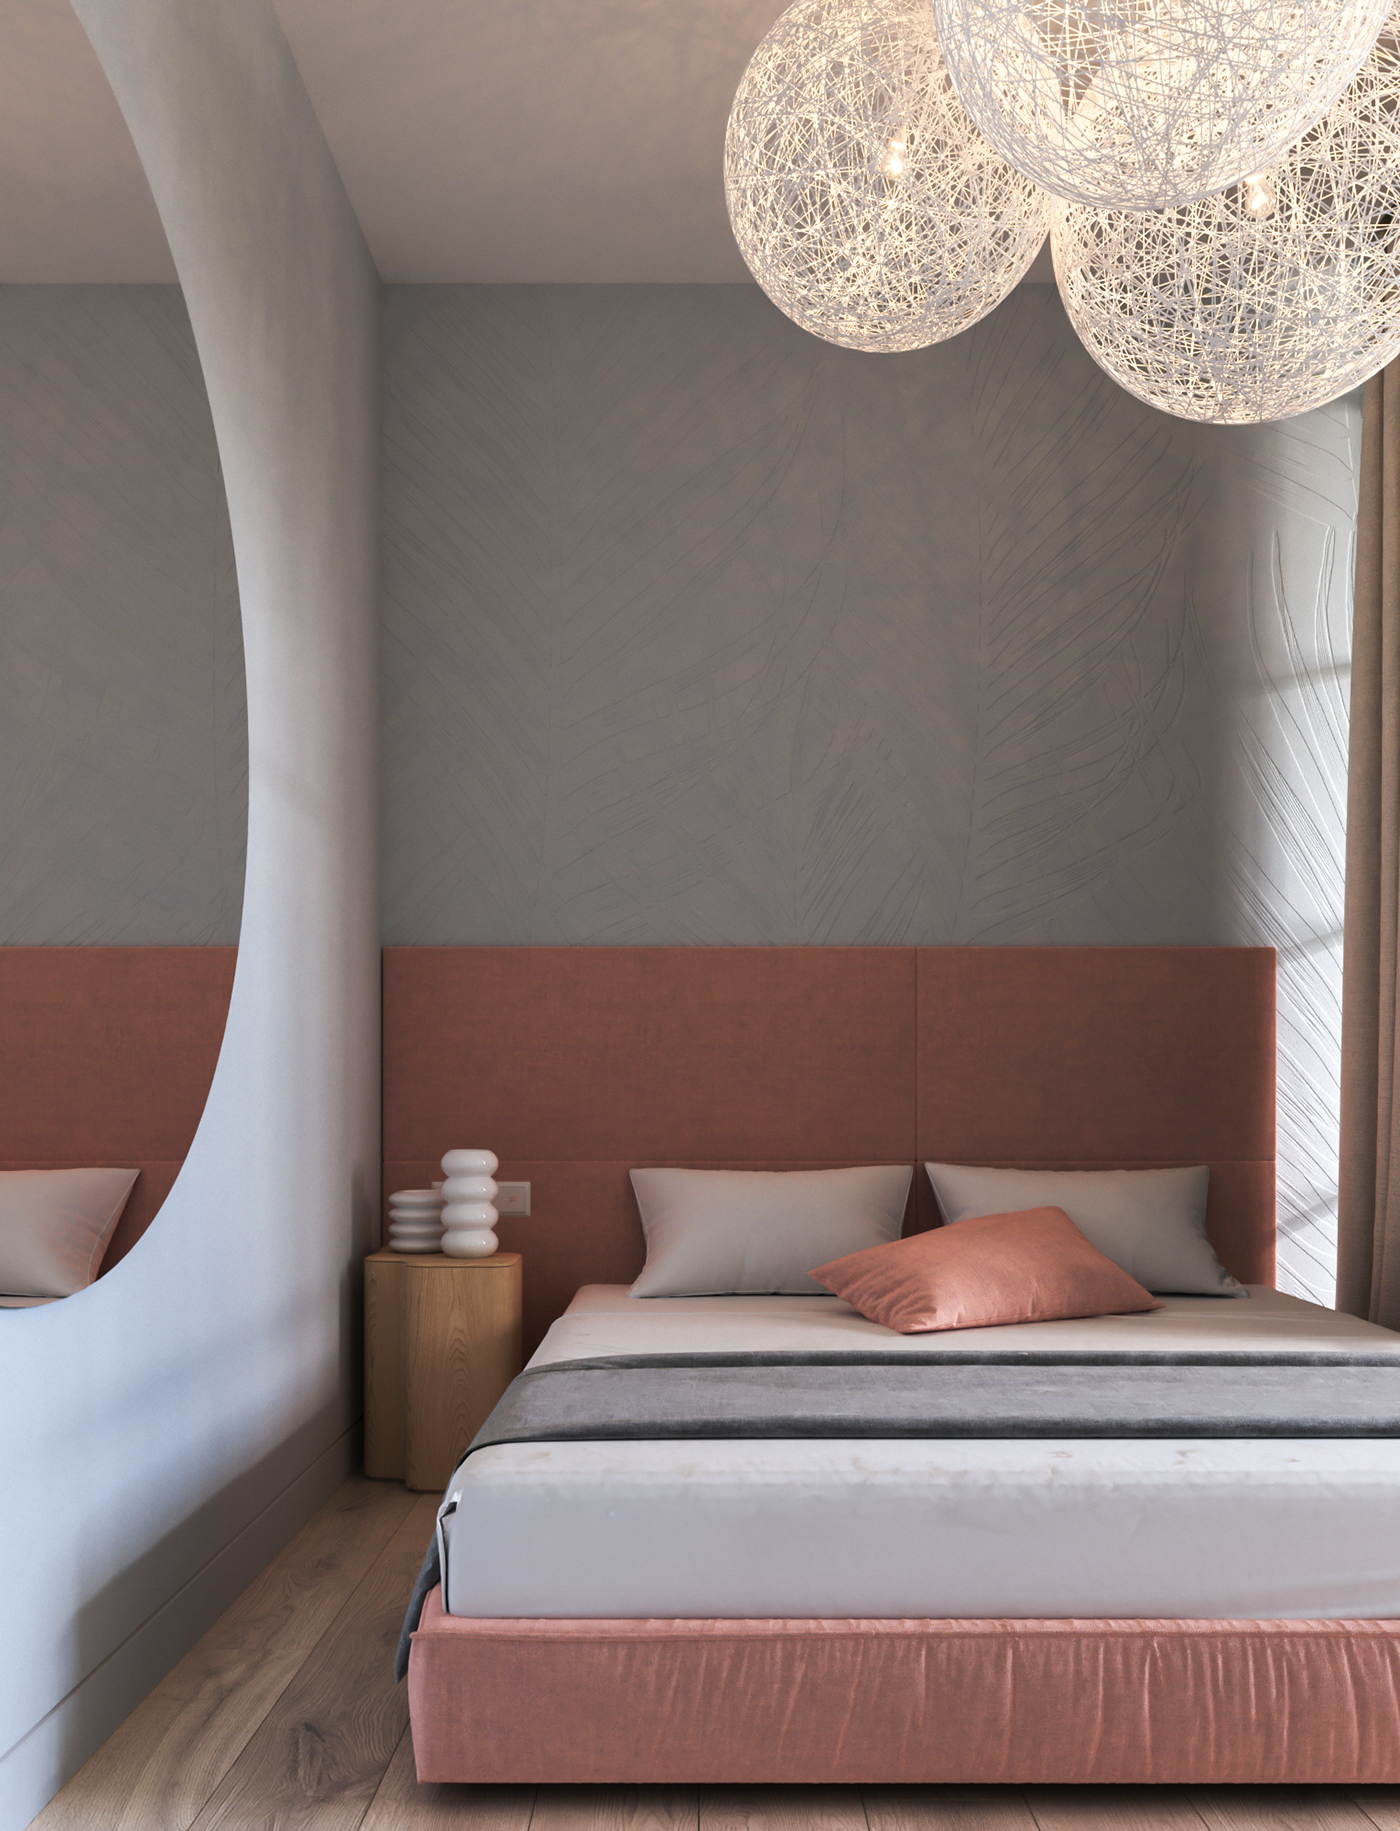 Deze moderne slaapkamer is stijlvol ingericht met zachte kleurtinten